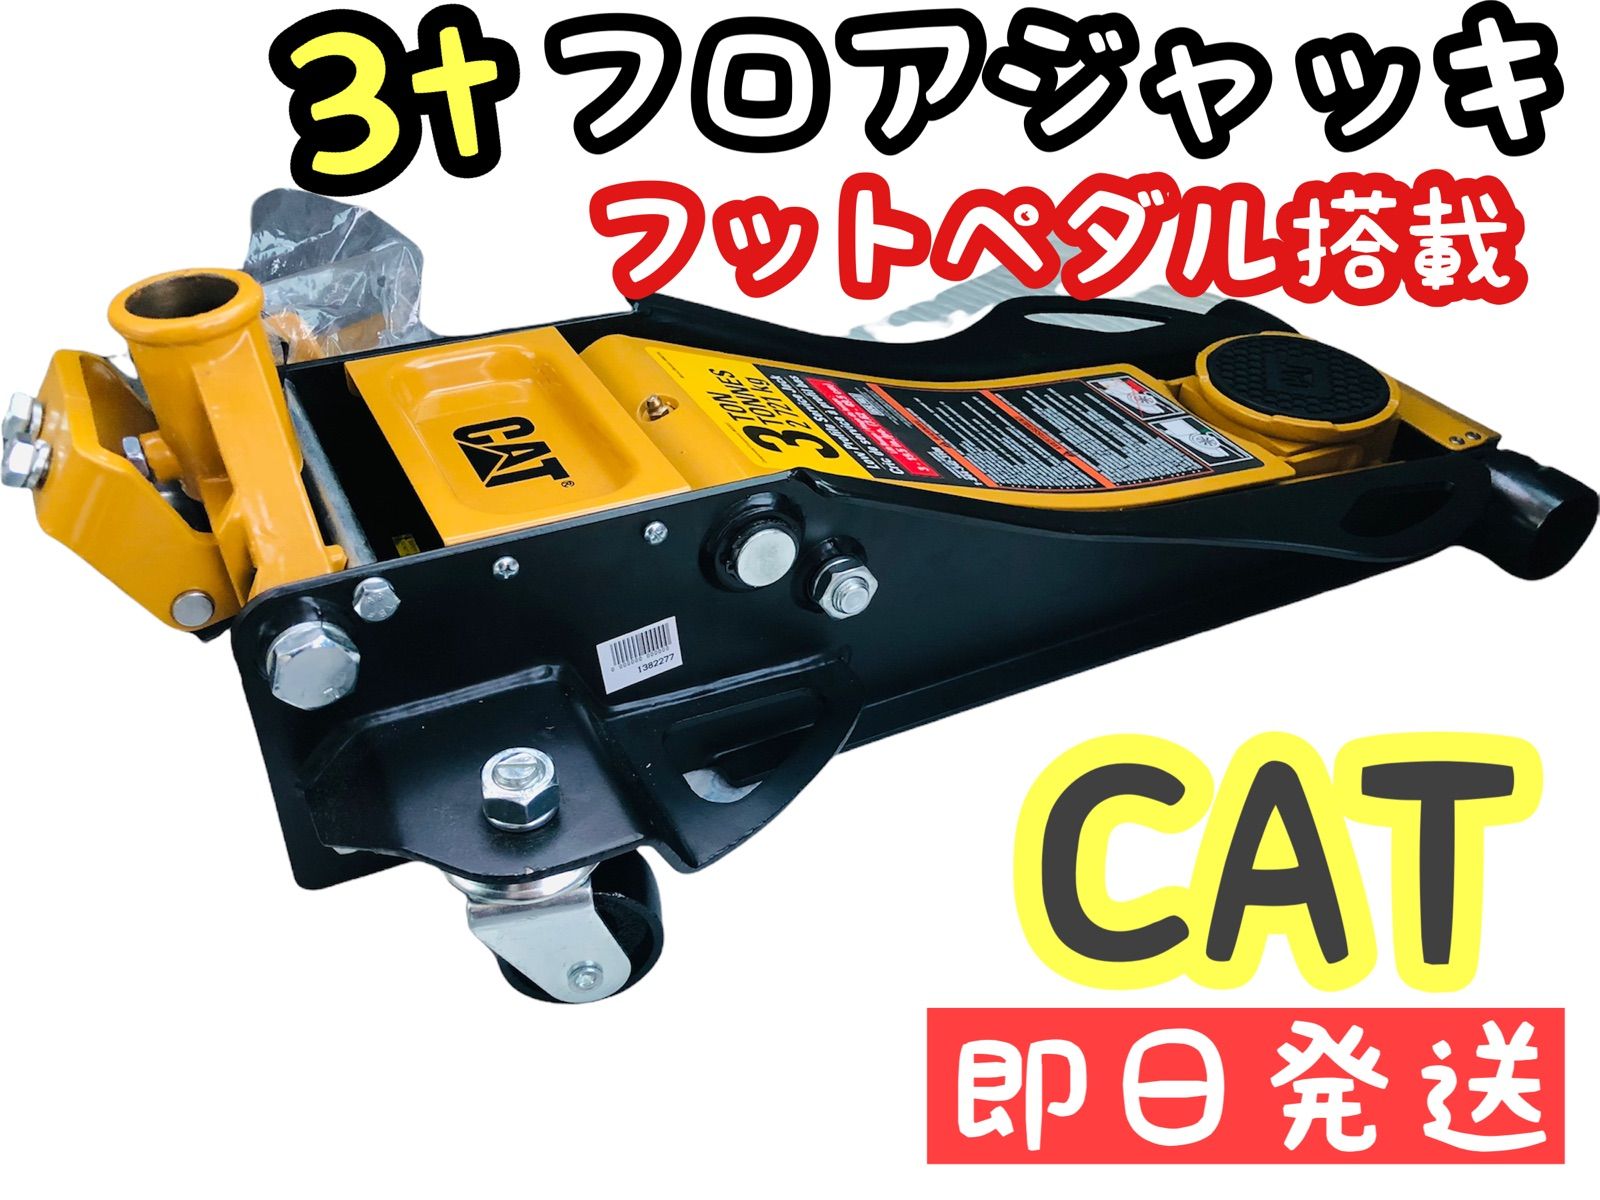 CAT低床 油圧式 3t スチールジャッキ フットペダル仕様